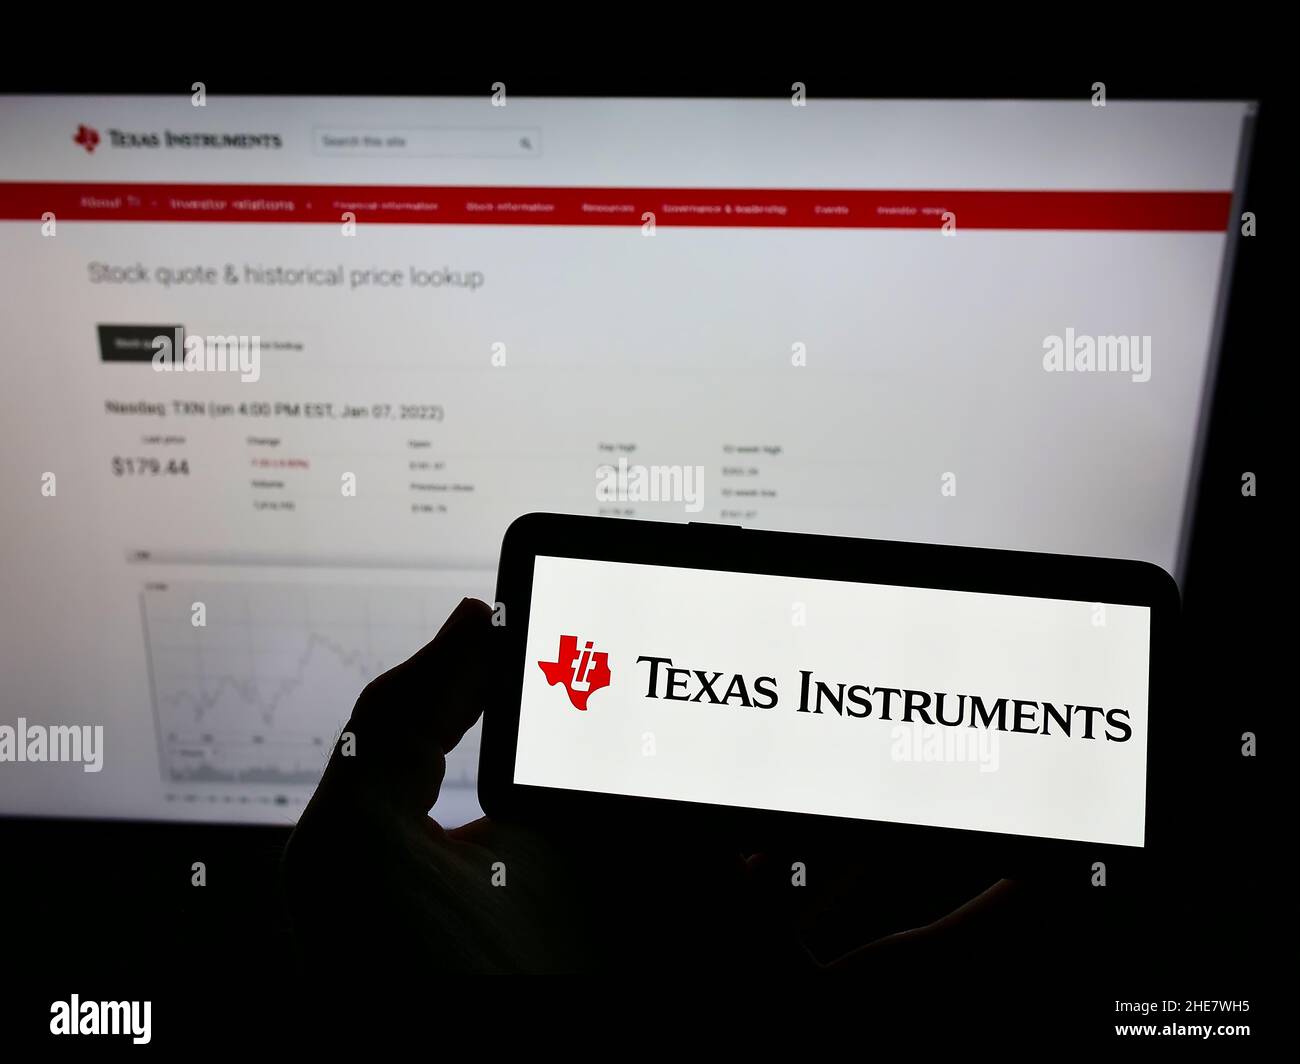 Persona che tiene il telefono cellulare con il logo della società statunitense Texas Instruments Incorporated (ti) sullo schermo di fronte alla pagina web. Mettere a fuoco sul display del telefono. Foto Stock